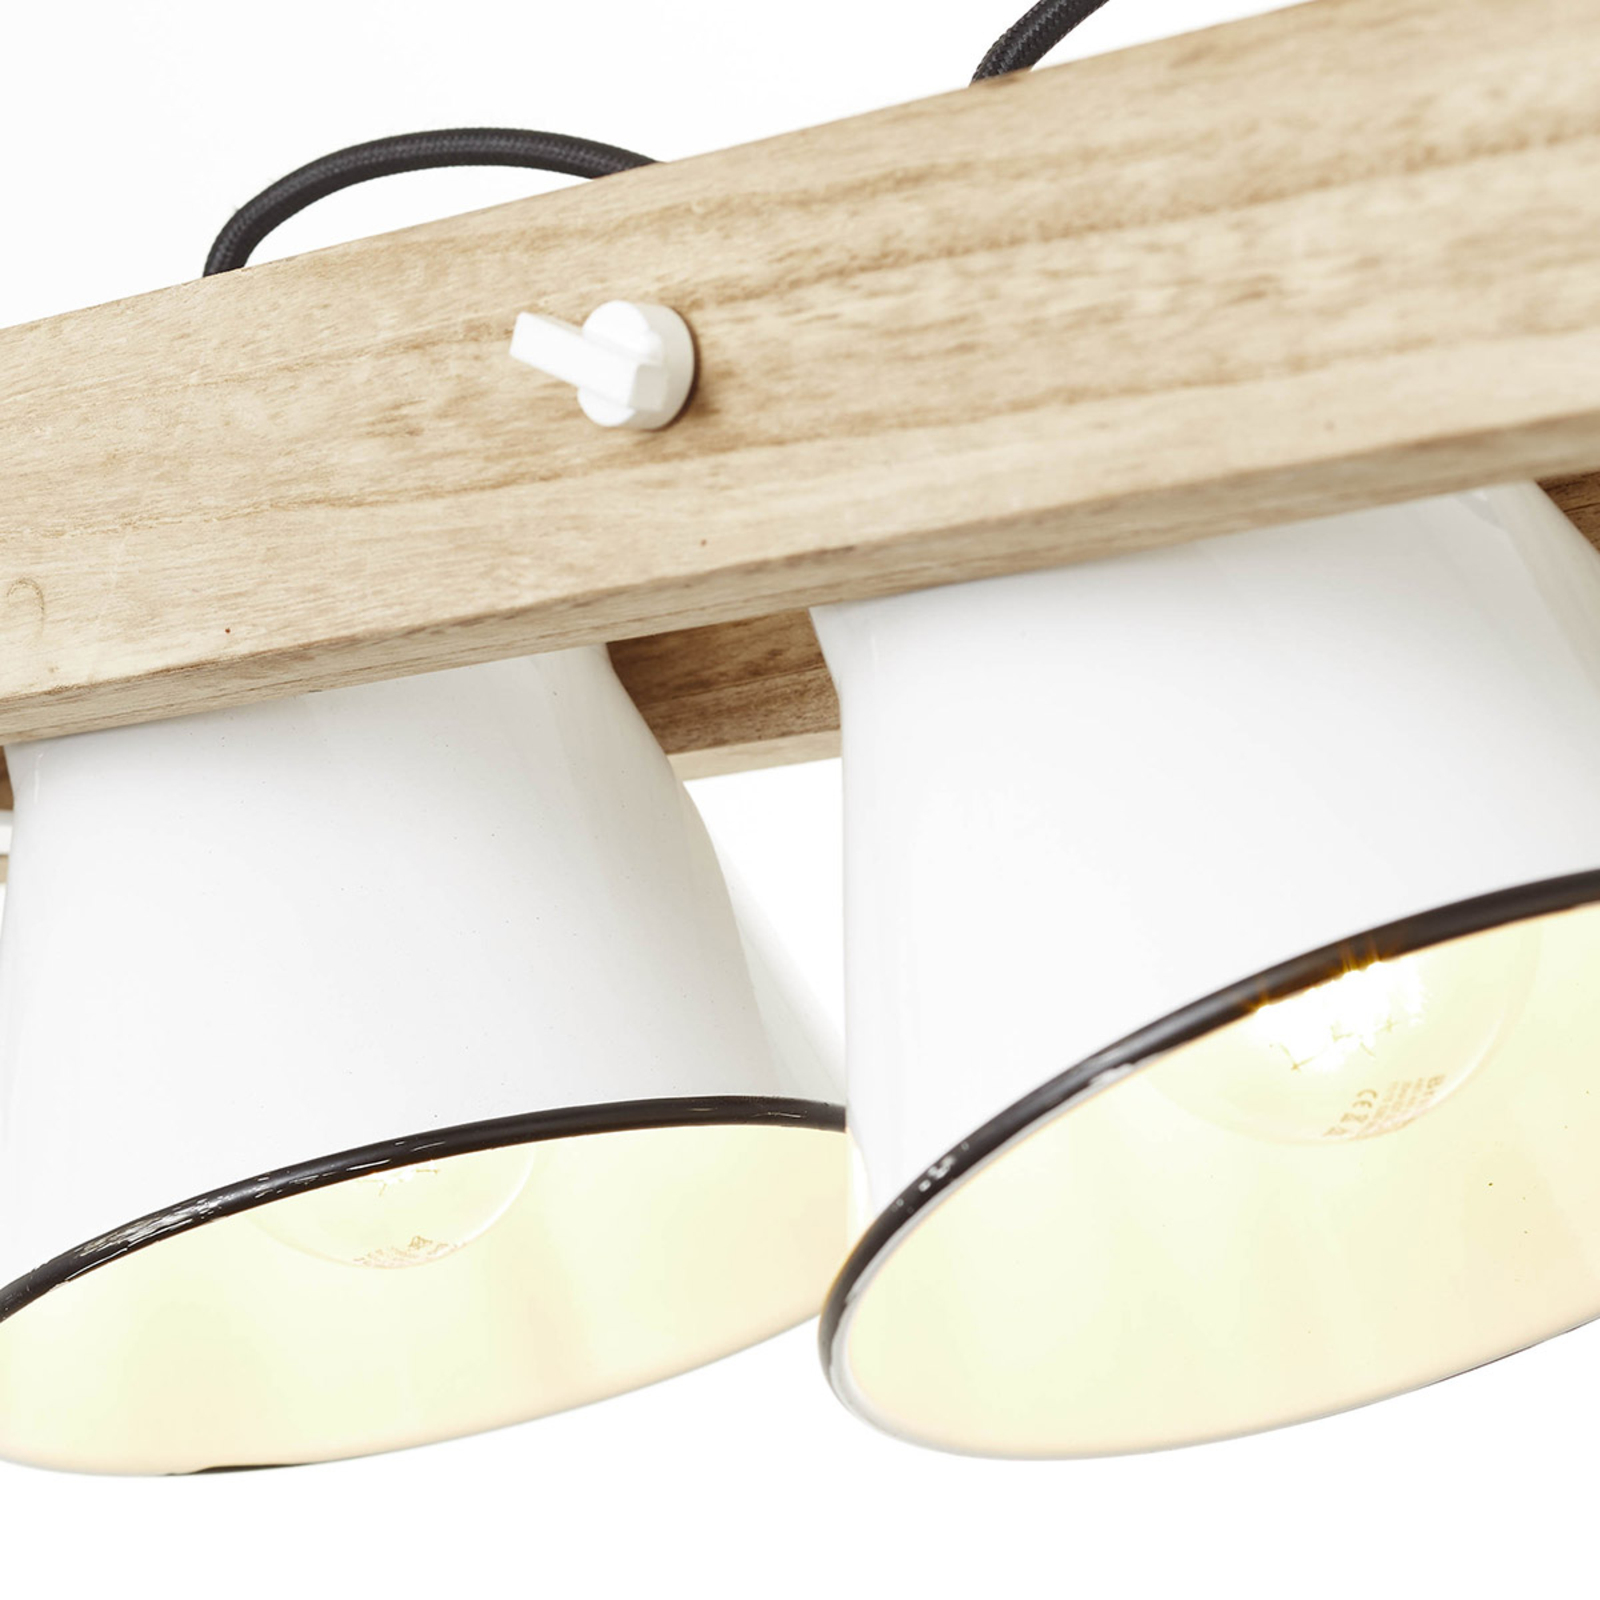 Plow pendant light 3-bulb, white light wood